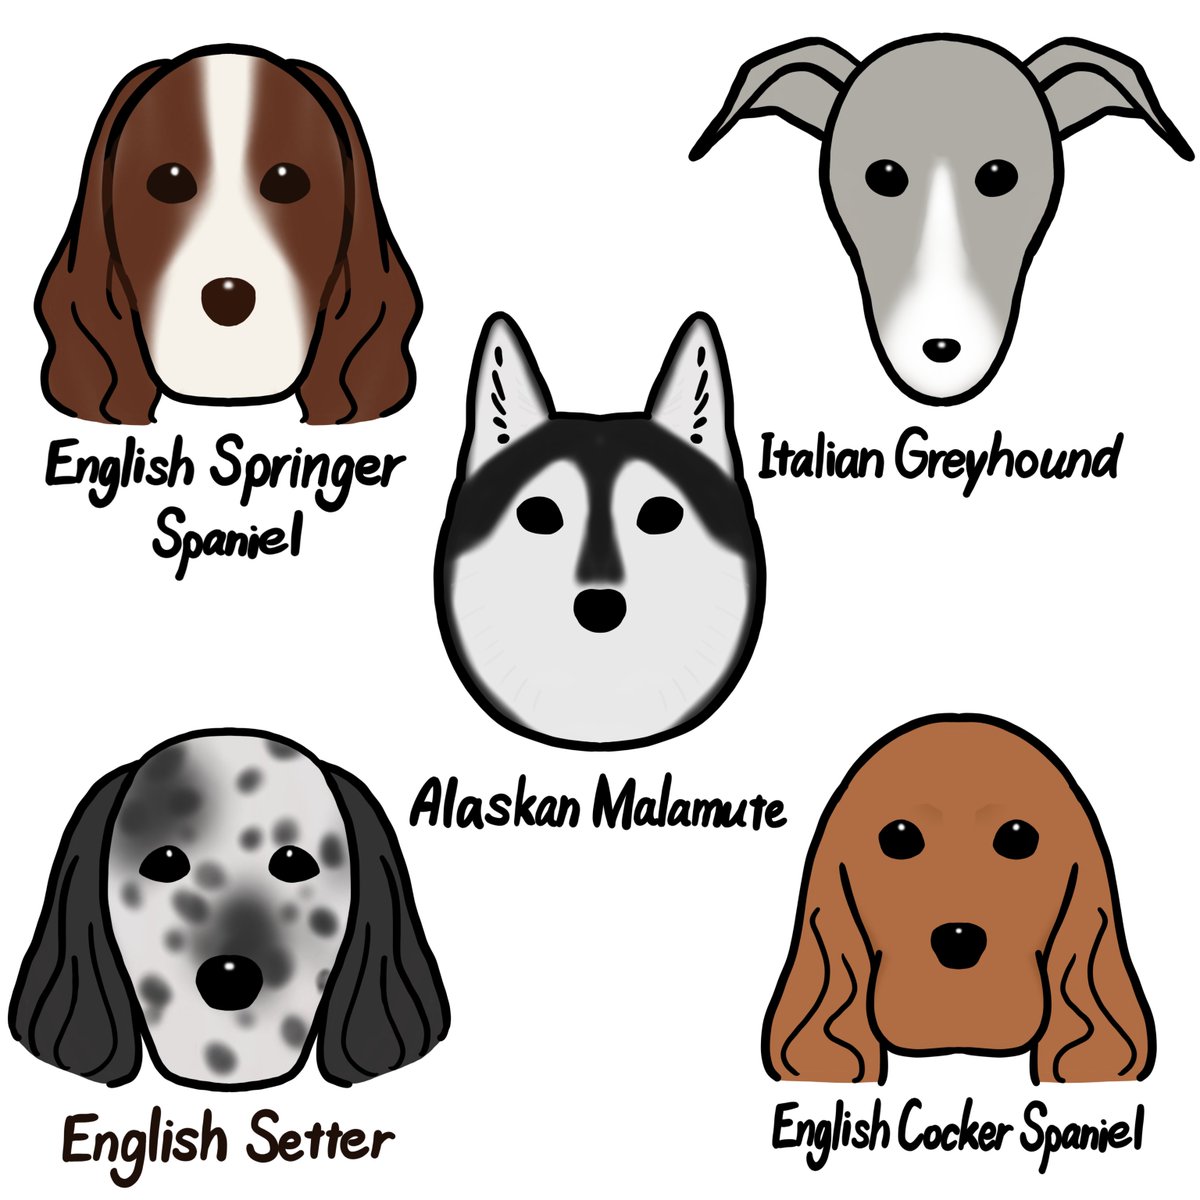 ワンポイントわんこシリーズ、新たに5種類追加です🐶

 #犬  #犬グッズ
 #アラスカンマラミュート
 #イタリアングレーハウンド
 #イングリッシュコッカースパニエル
 #イングリッシュスプリンガースパニエル
 #イングリッシュセッター